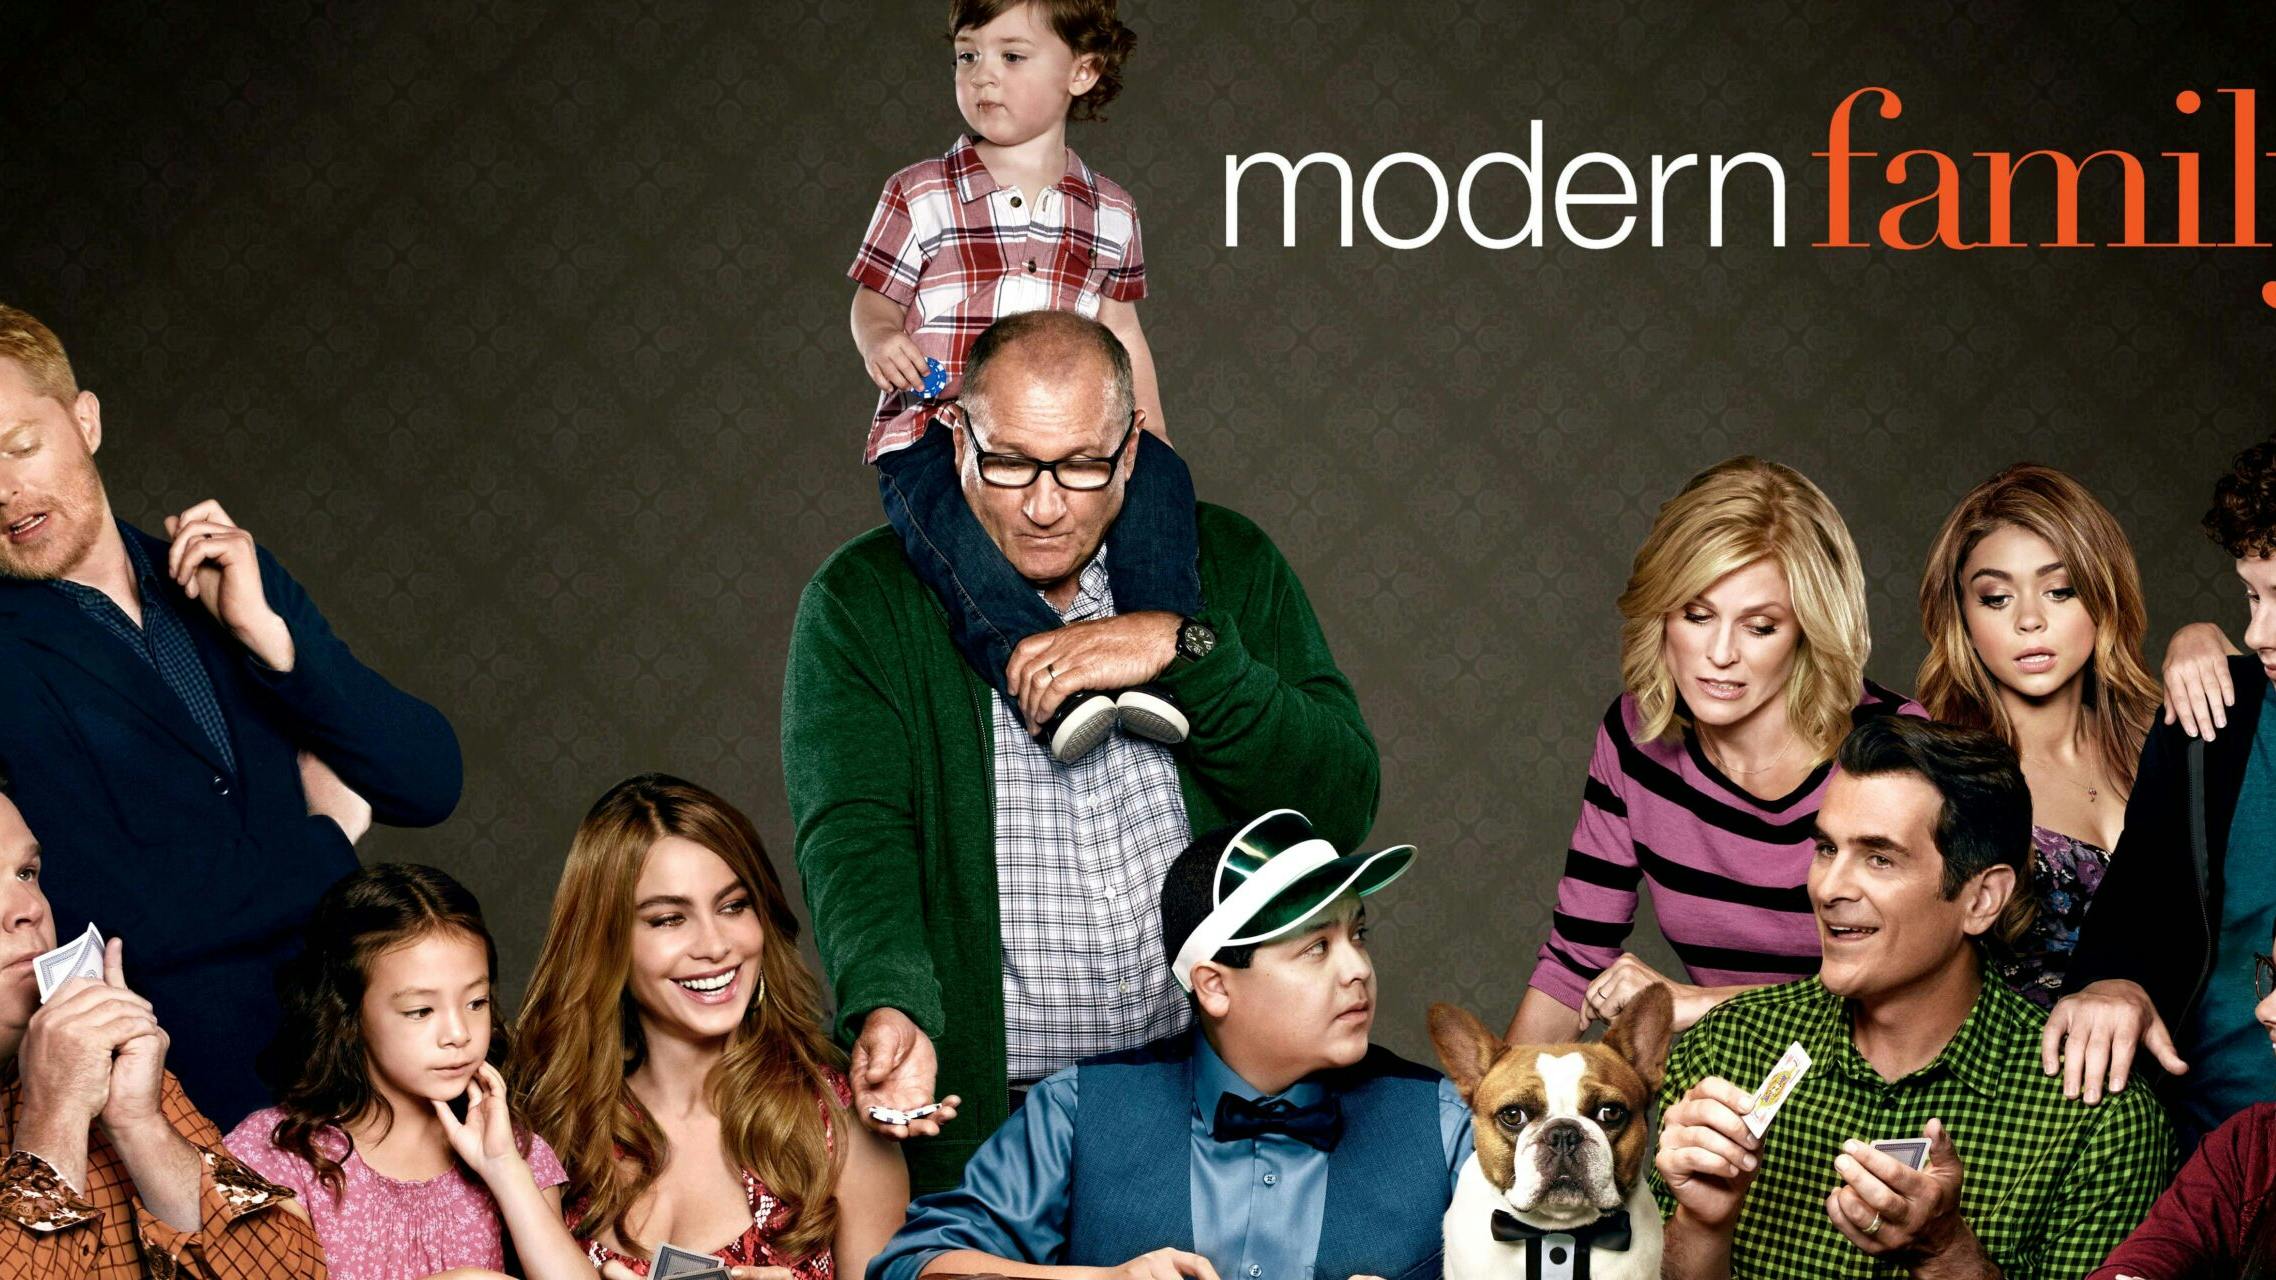 Anmeldelse: Modern Family sæson 10 viser sig som en dårligere og udvandet udgave af det originale koncept